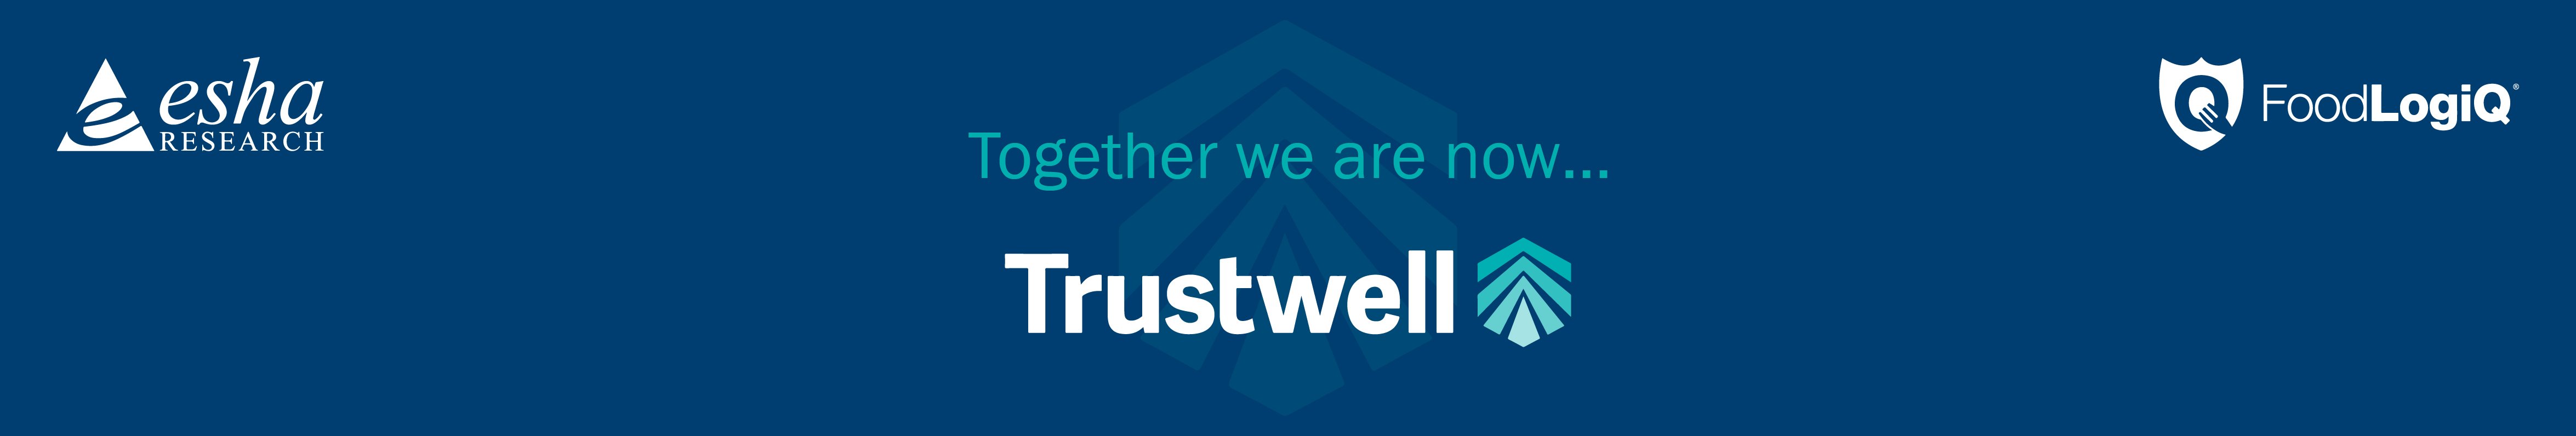 trustwell-esha-foodlogiq-merge-banner